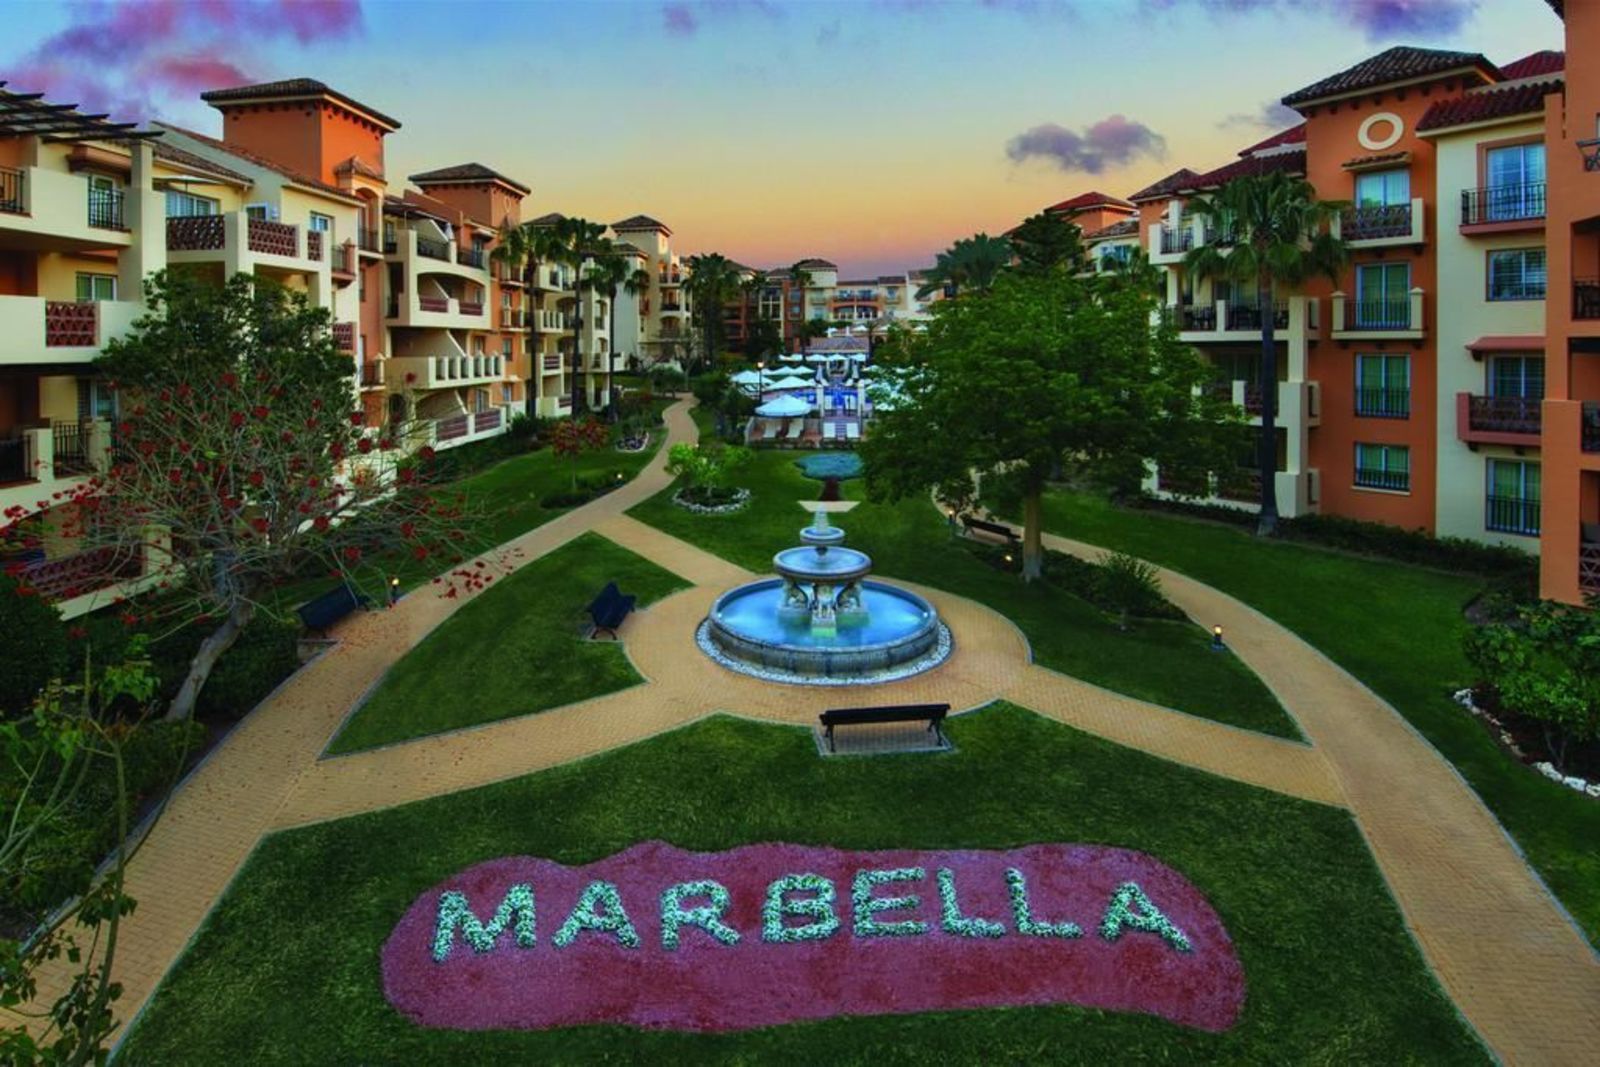 Marriott's Marbella Beach Resort, 2-Slaapkamers